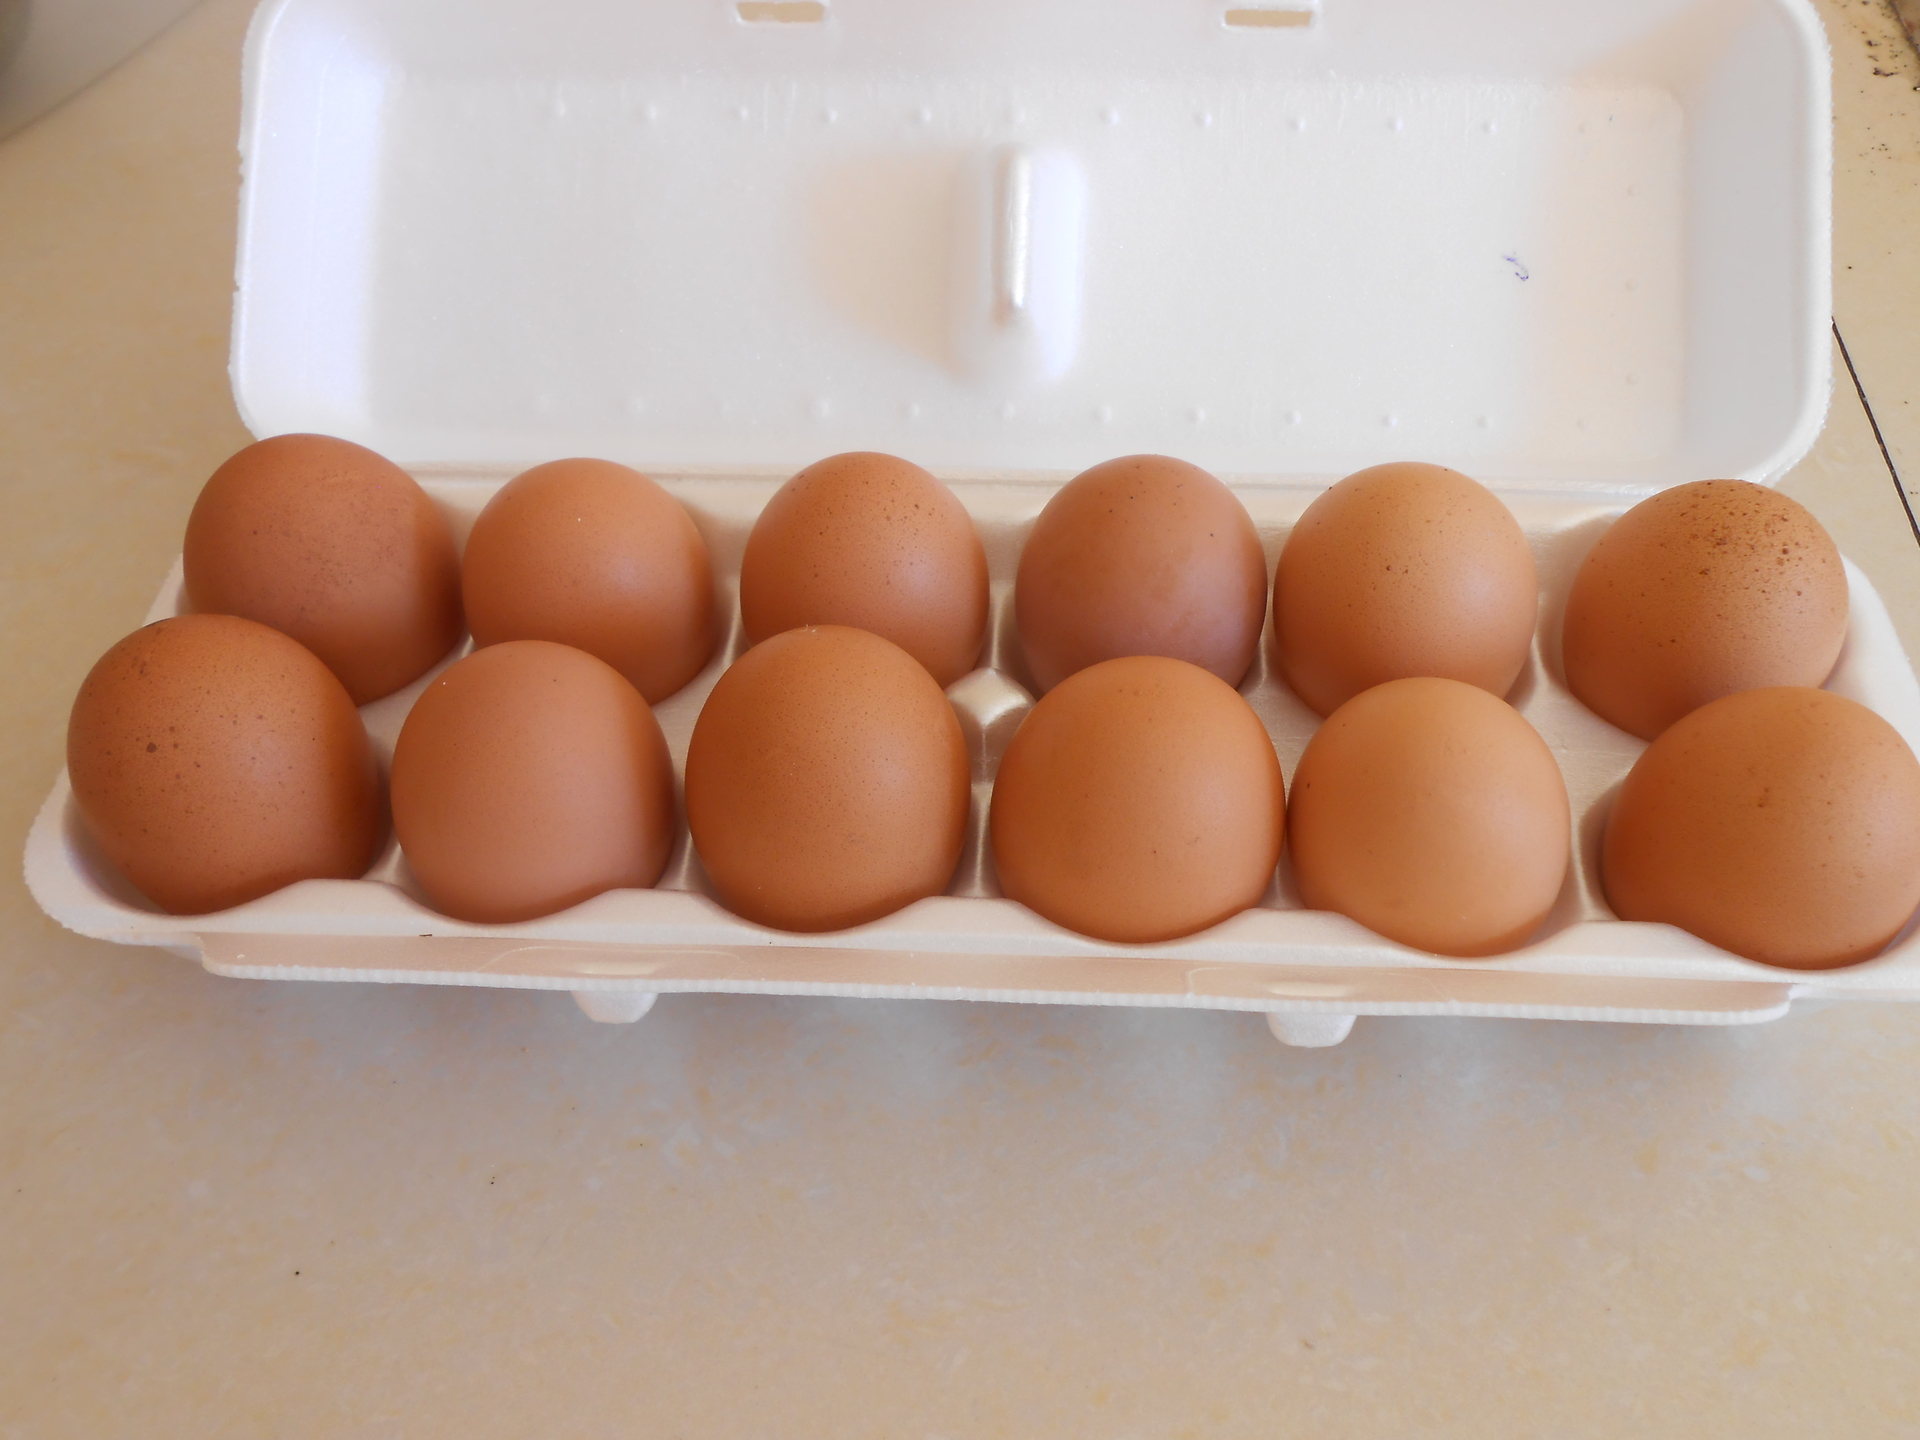 Eggs in box photo